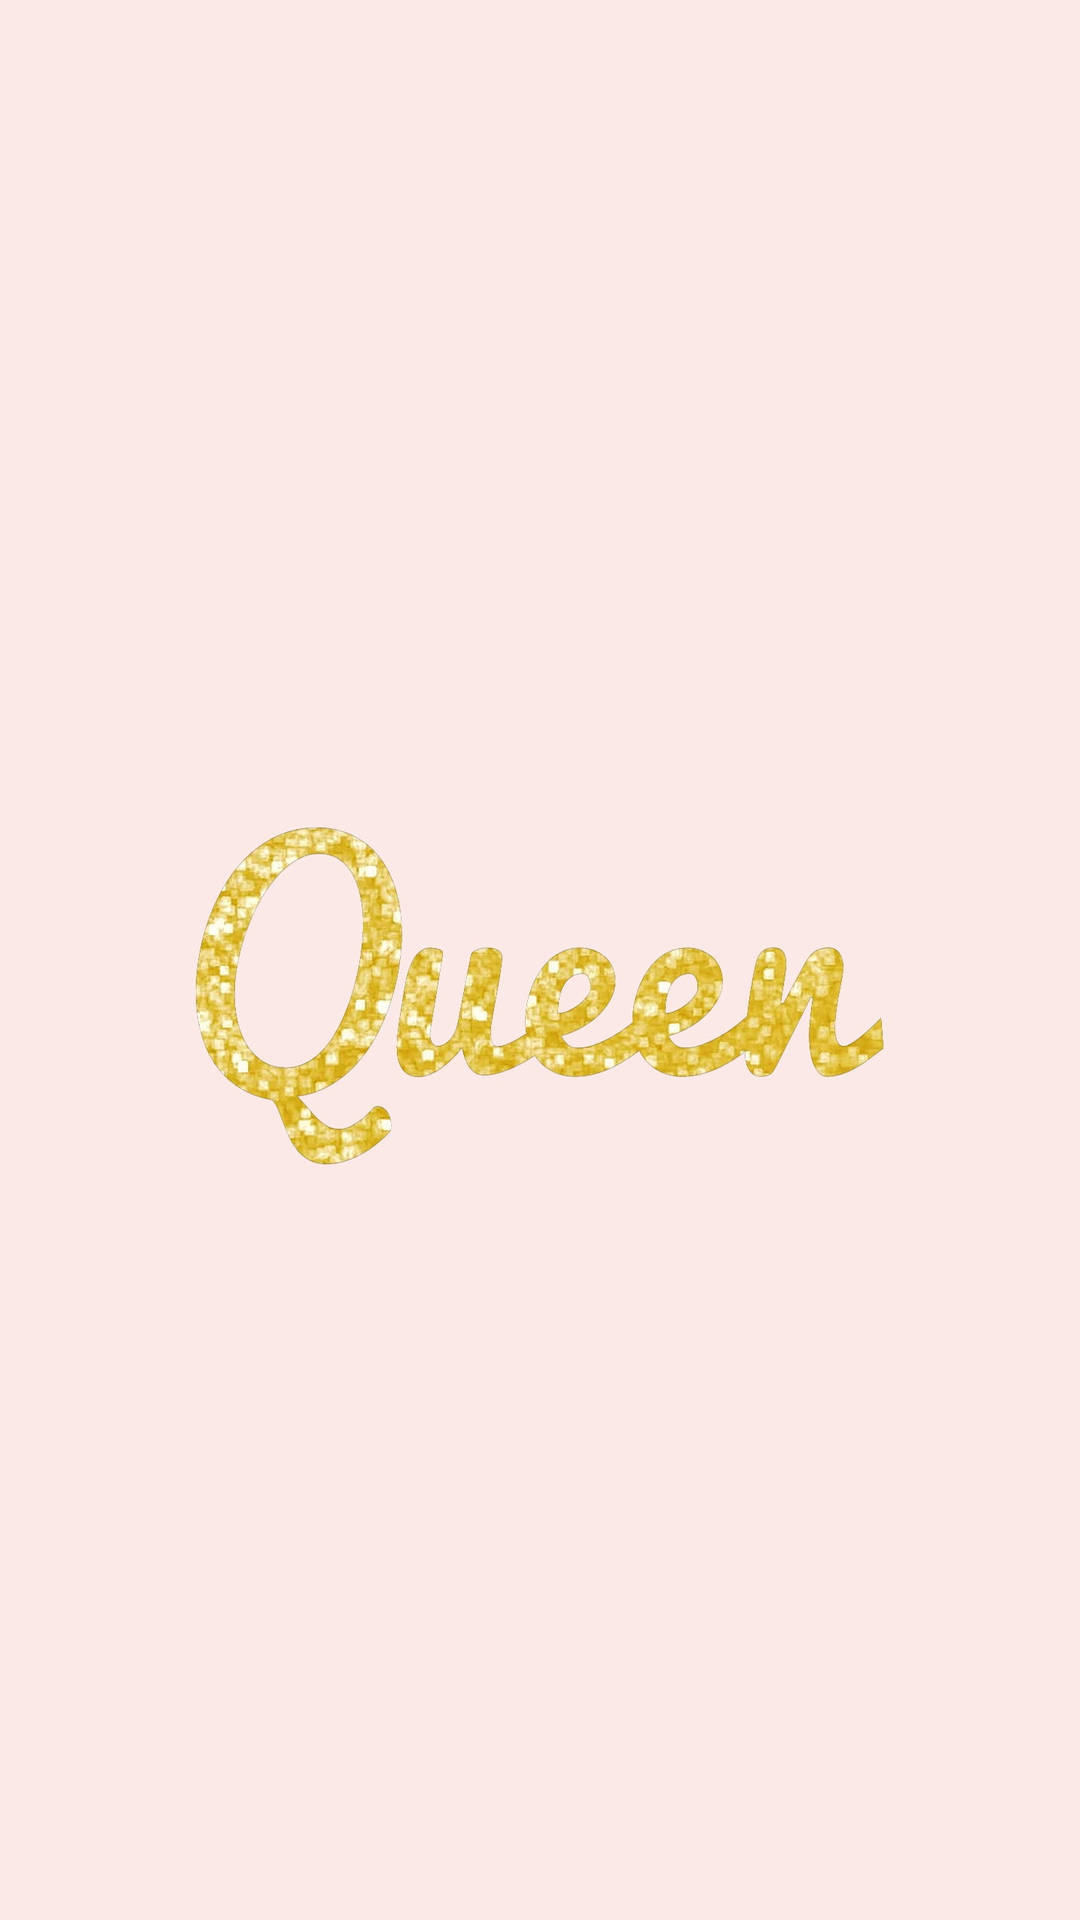 Gold Glitter Queen Girly Wallpaper